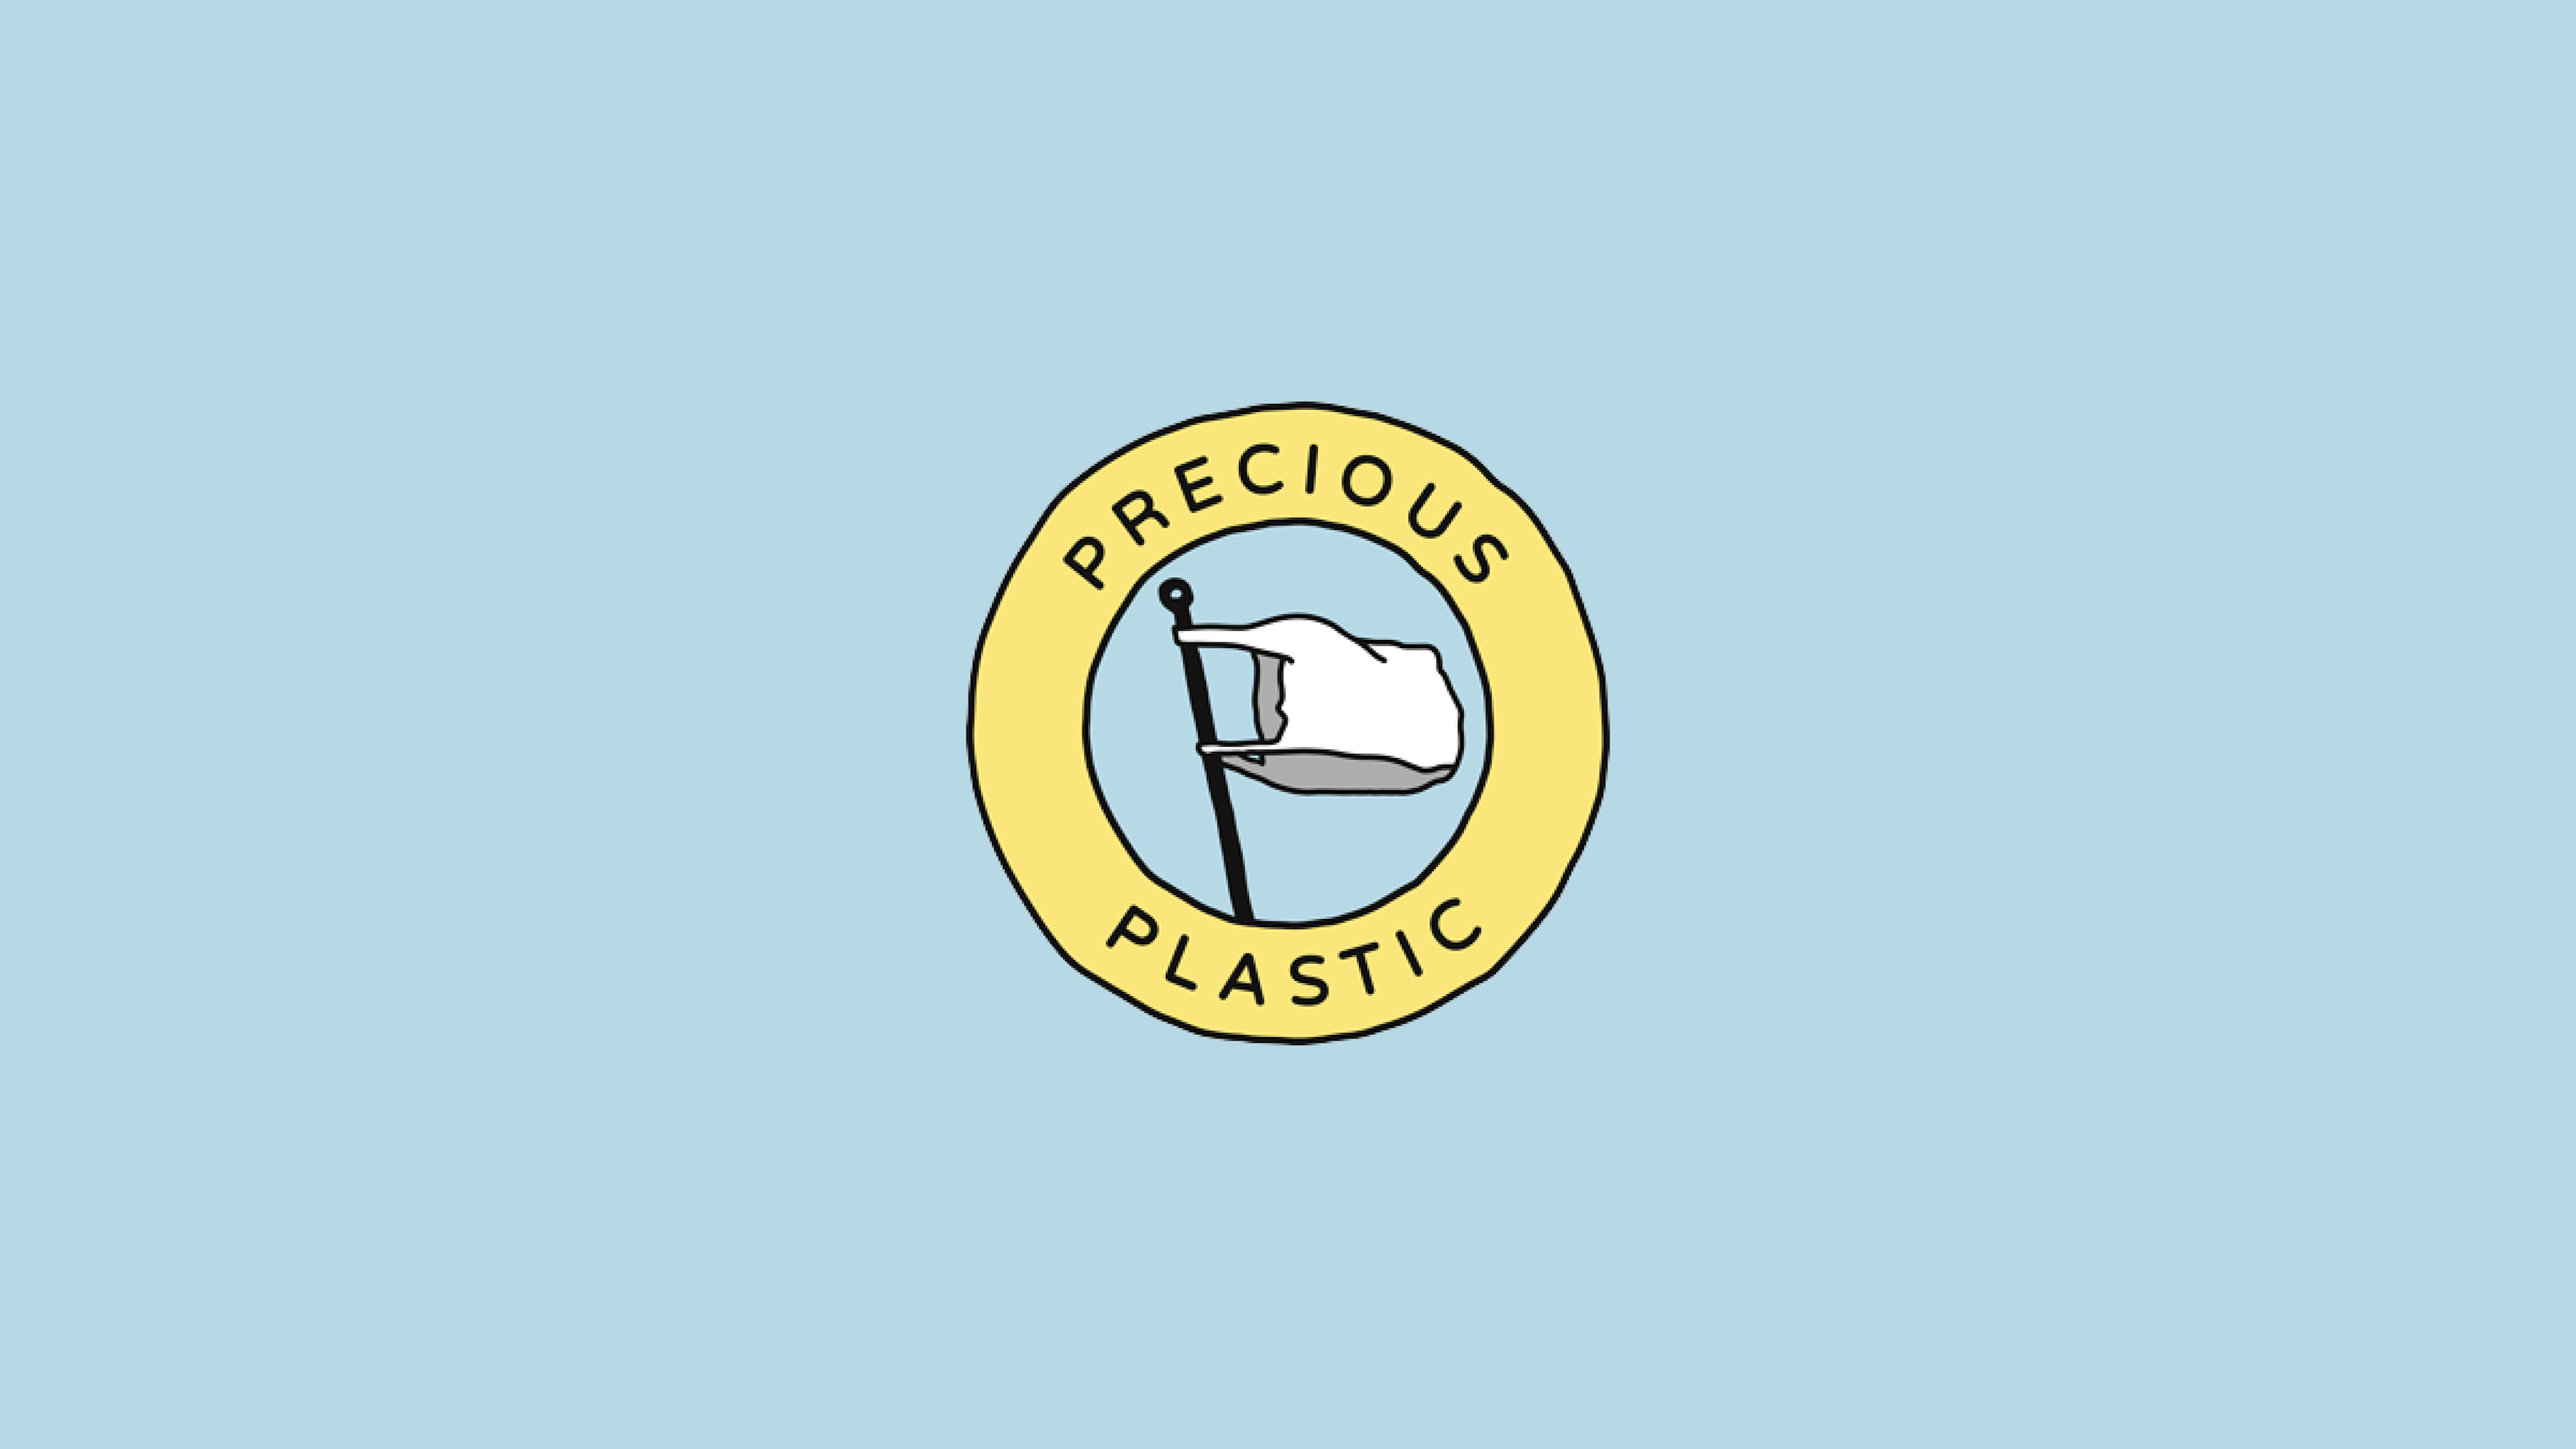 Precious plastic